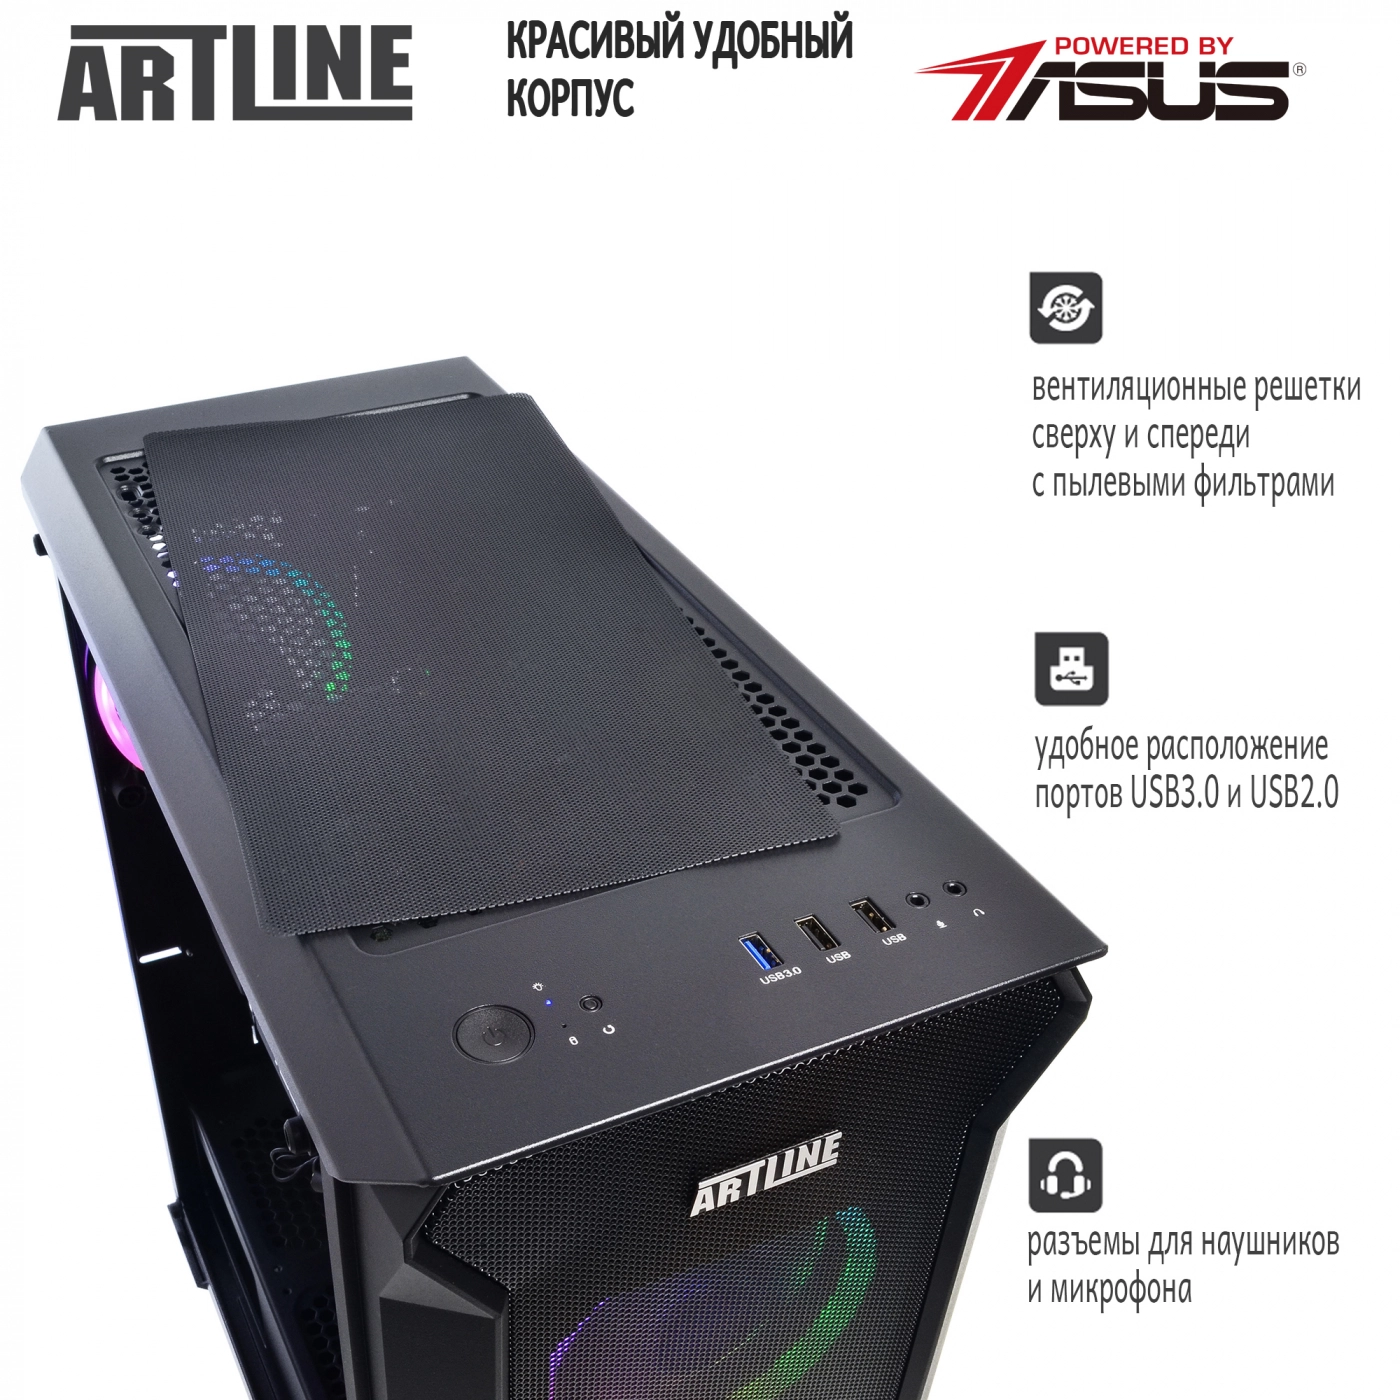 Купить Компьютер ARTLINE Gaming X66v16 - фото 5